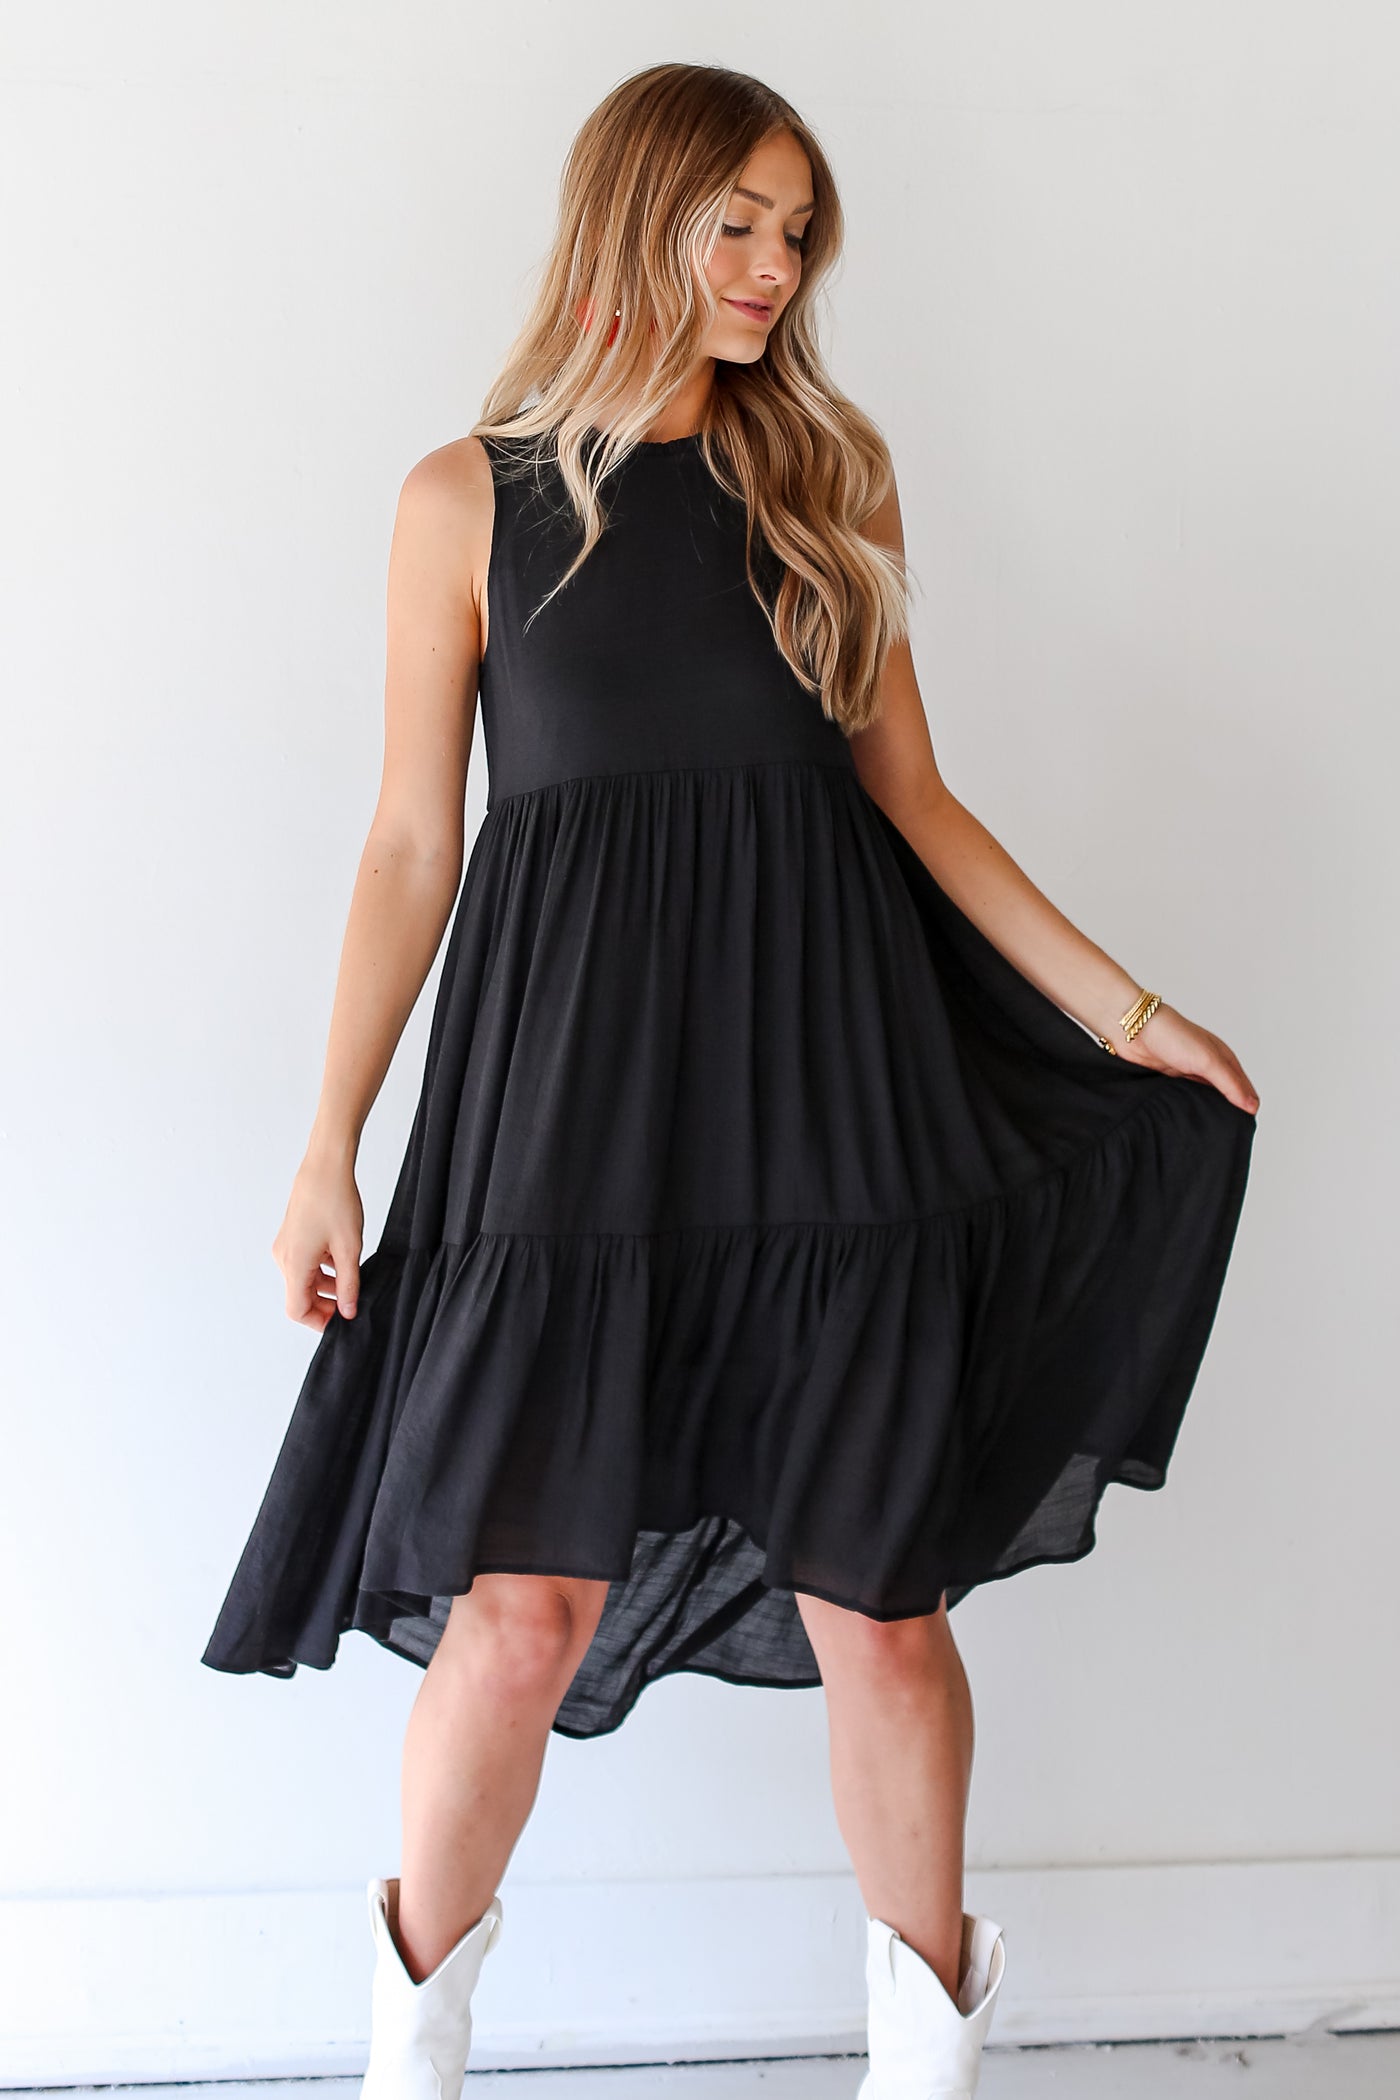 black Tiered Midi Dress on dress up model